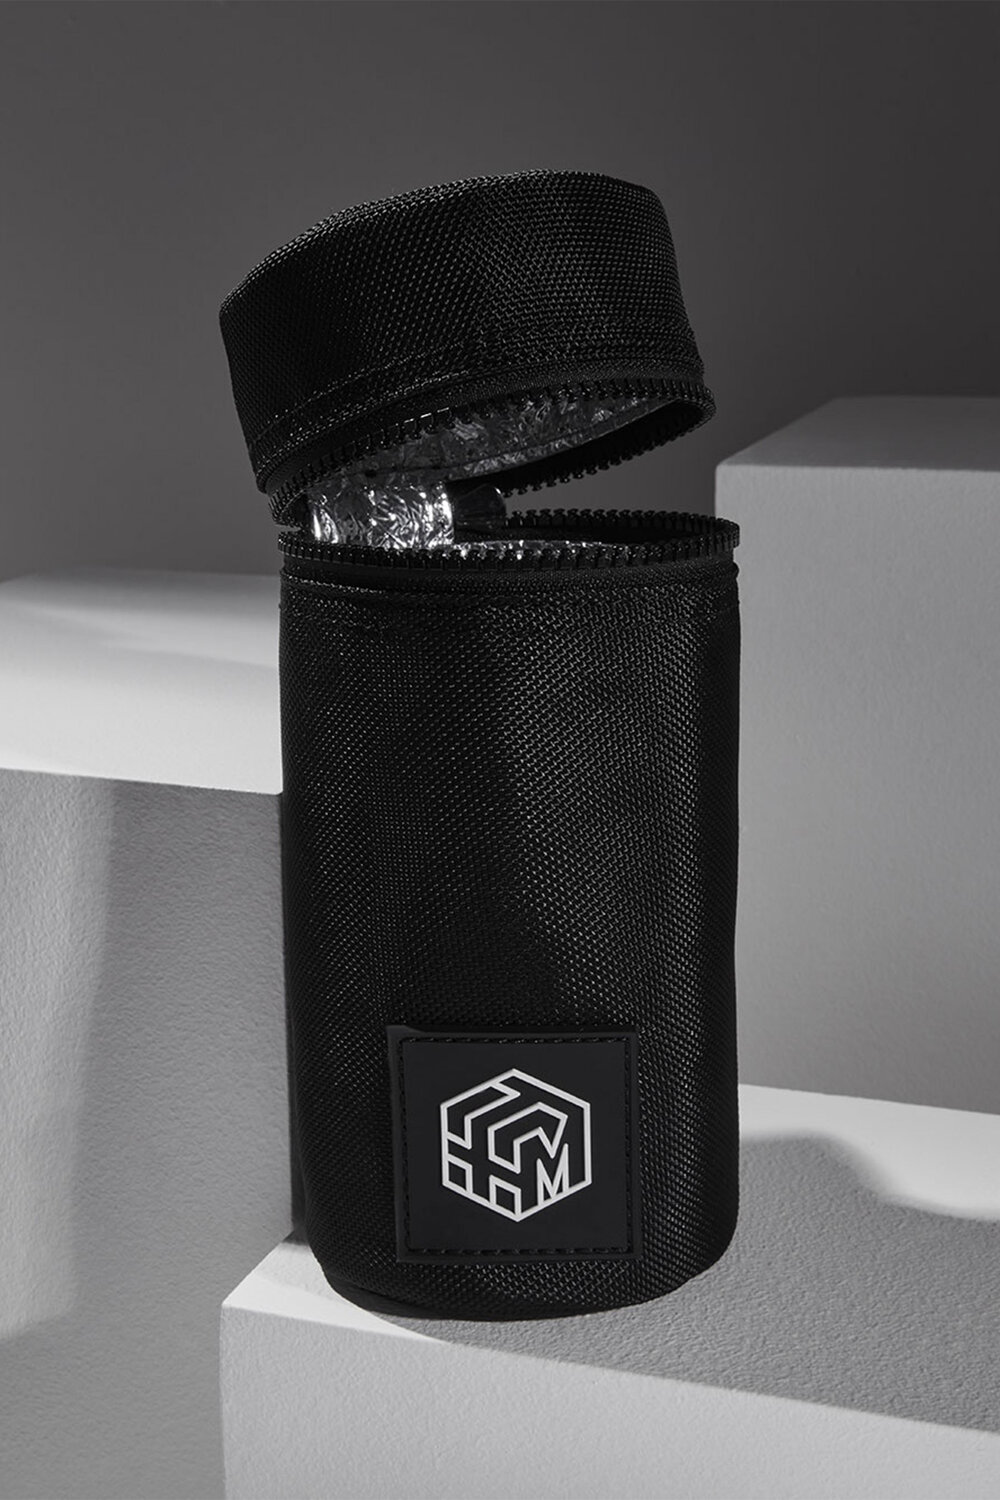 concept-insulated-bottle-holder.jpg